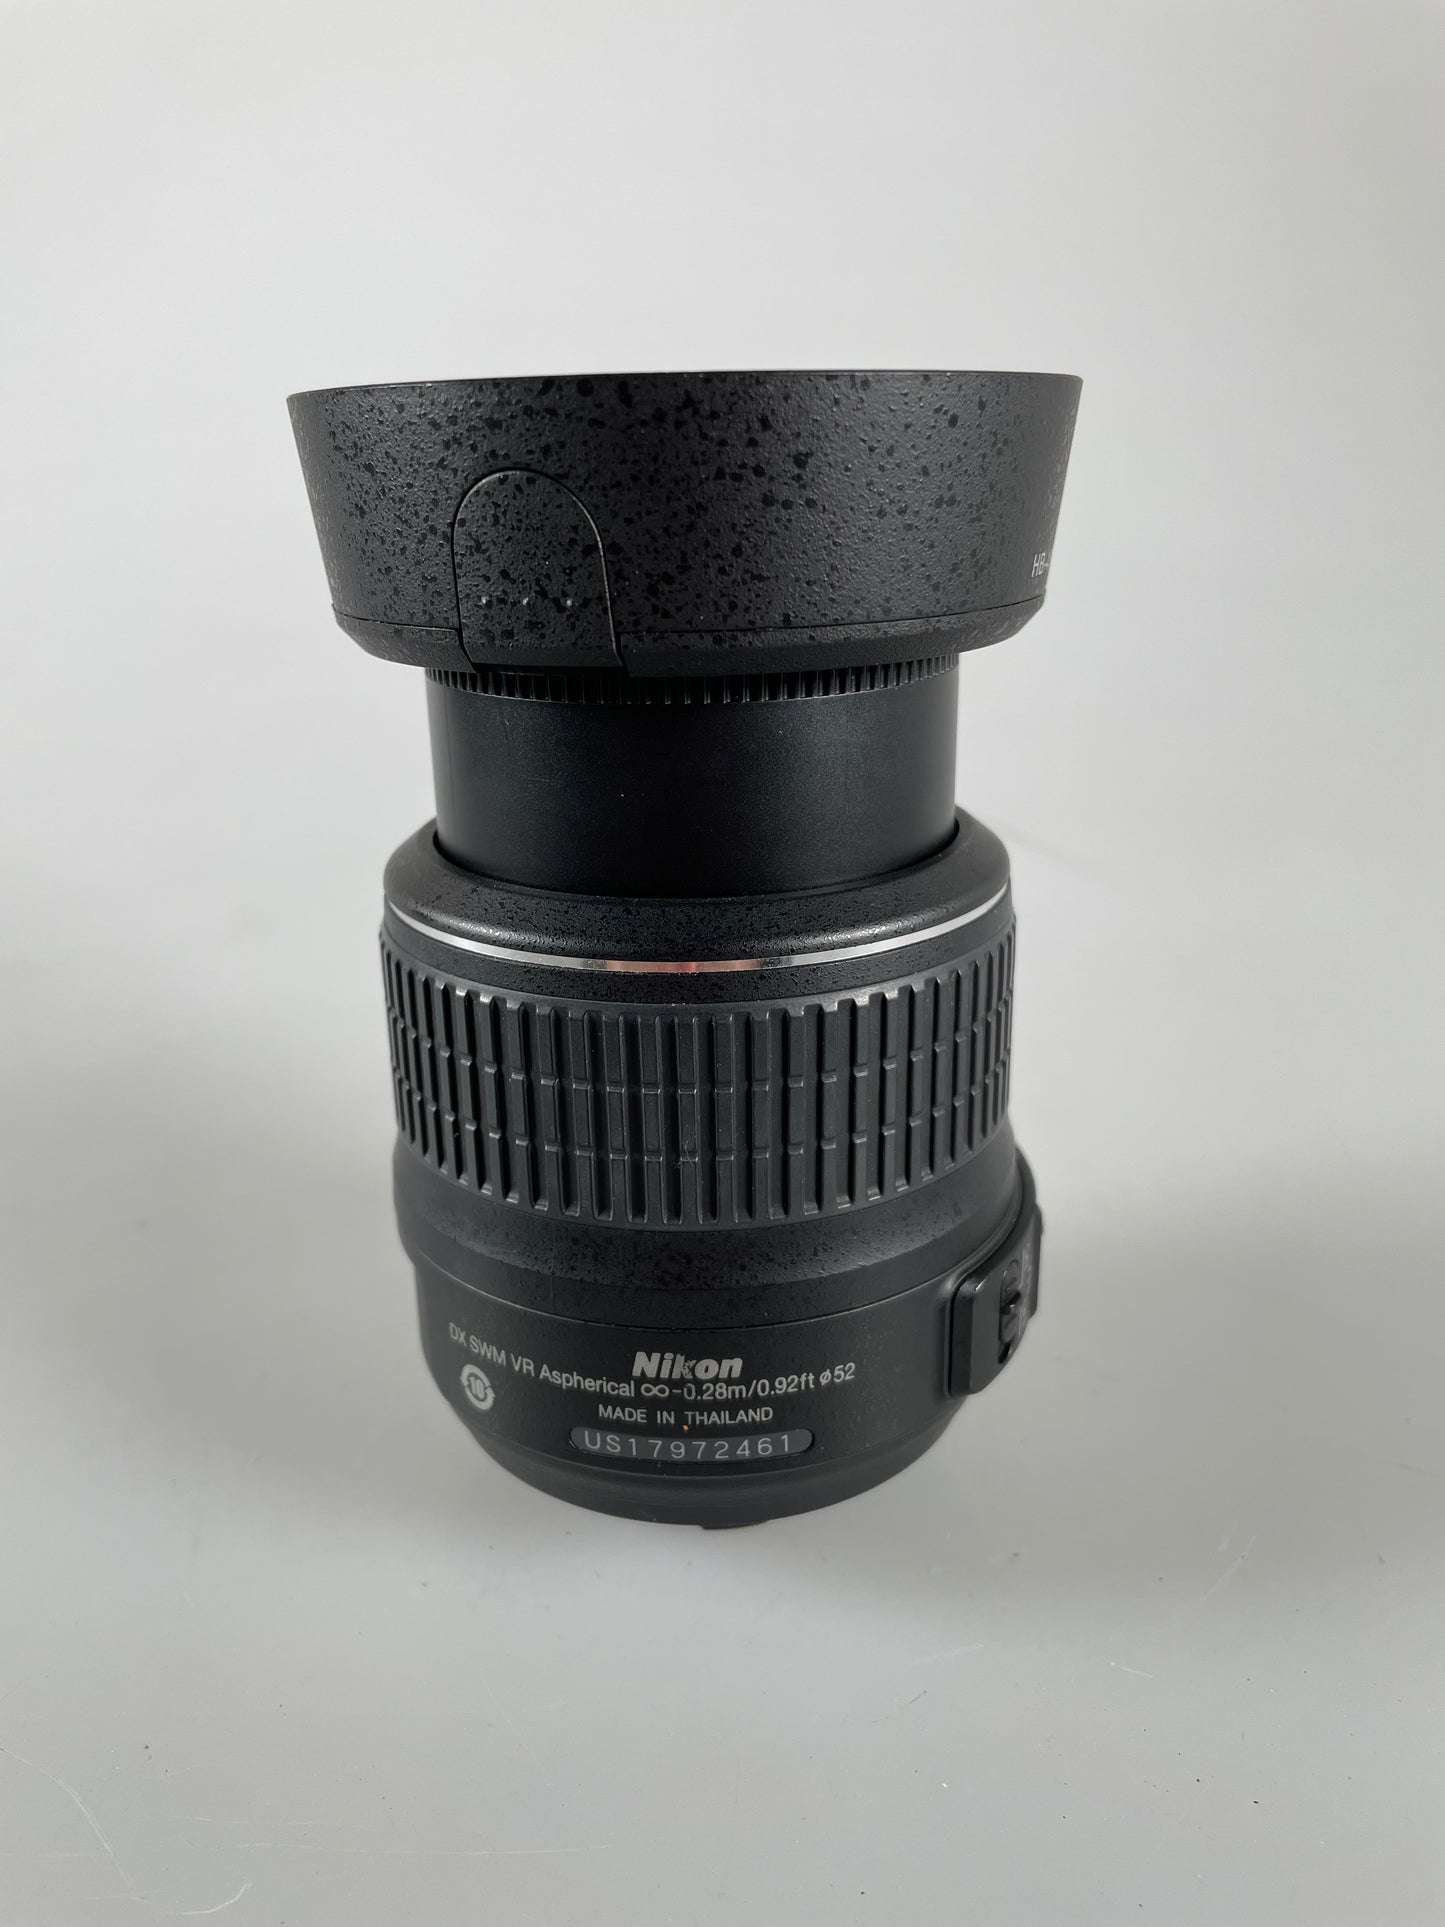 Nikon NIKKOR 18-55mm F3.5-5.6 II AF-S VR DX Lens